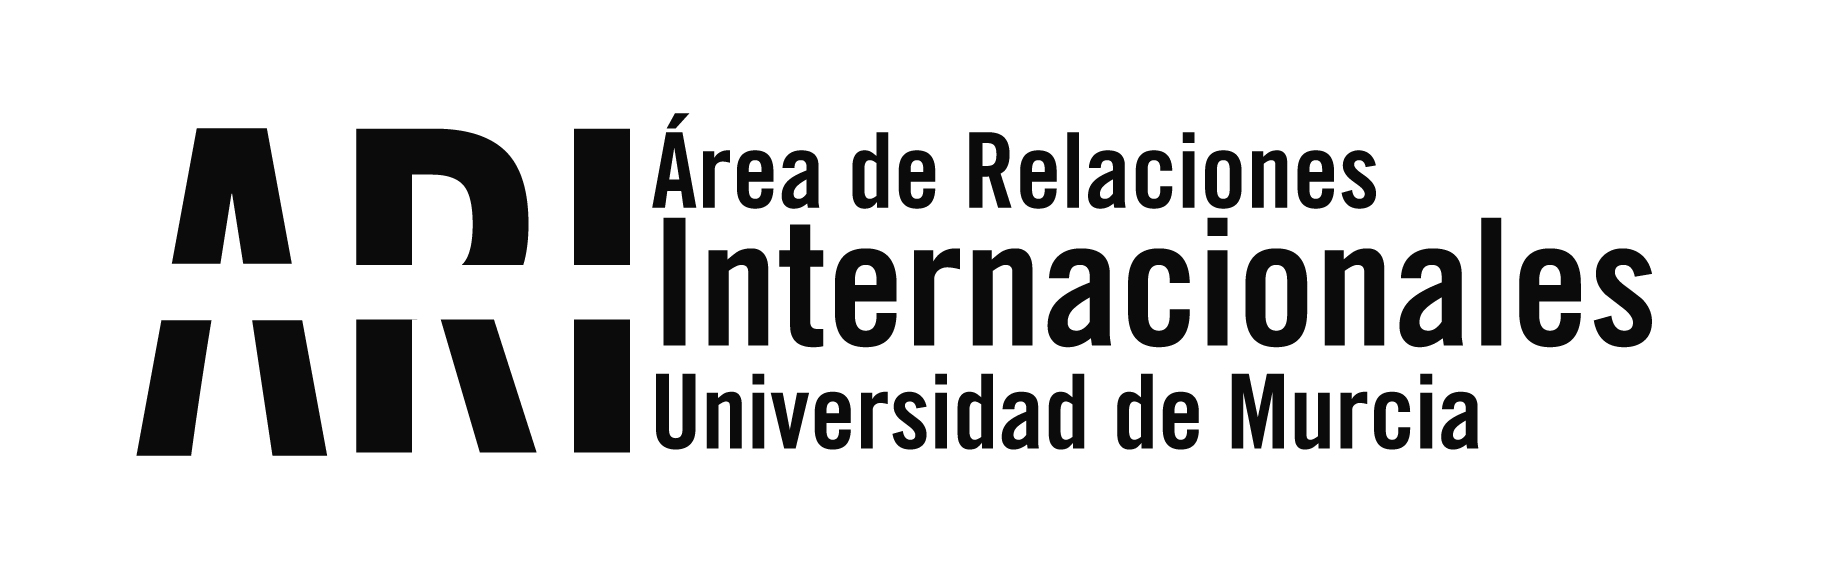 El gobierno de la CARM da la bienvenida a los nuevos estudiantes “Golondrina” argentinos - Área de Relaciones Internacionales